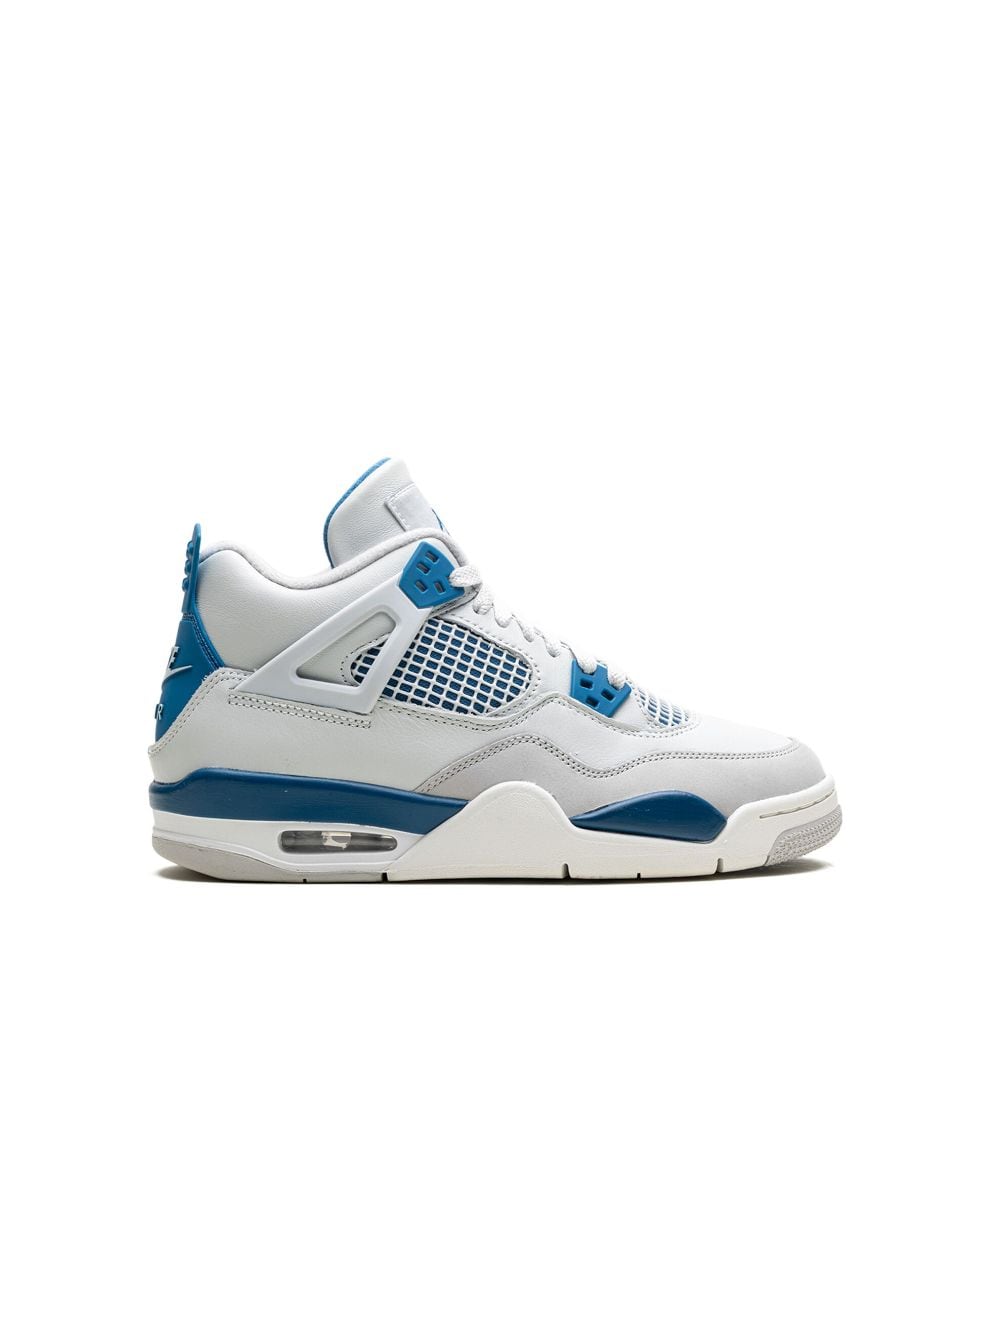 Image 2 of Jordan Kids Air Jordan 4 'Military Blue' sneakers